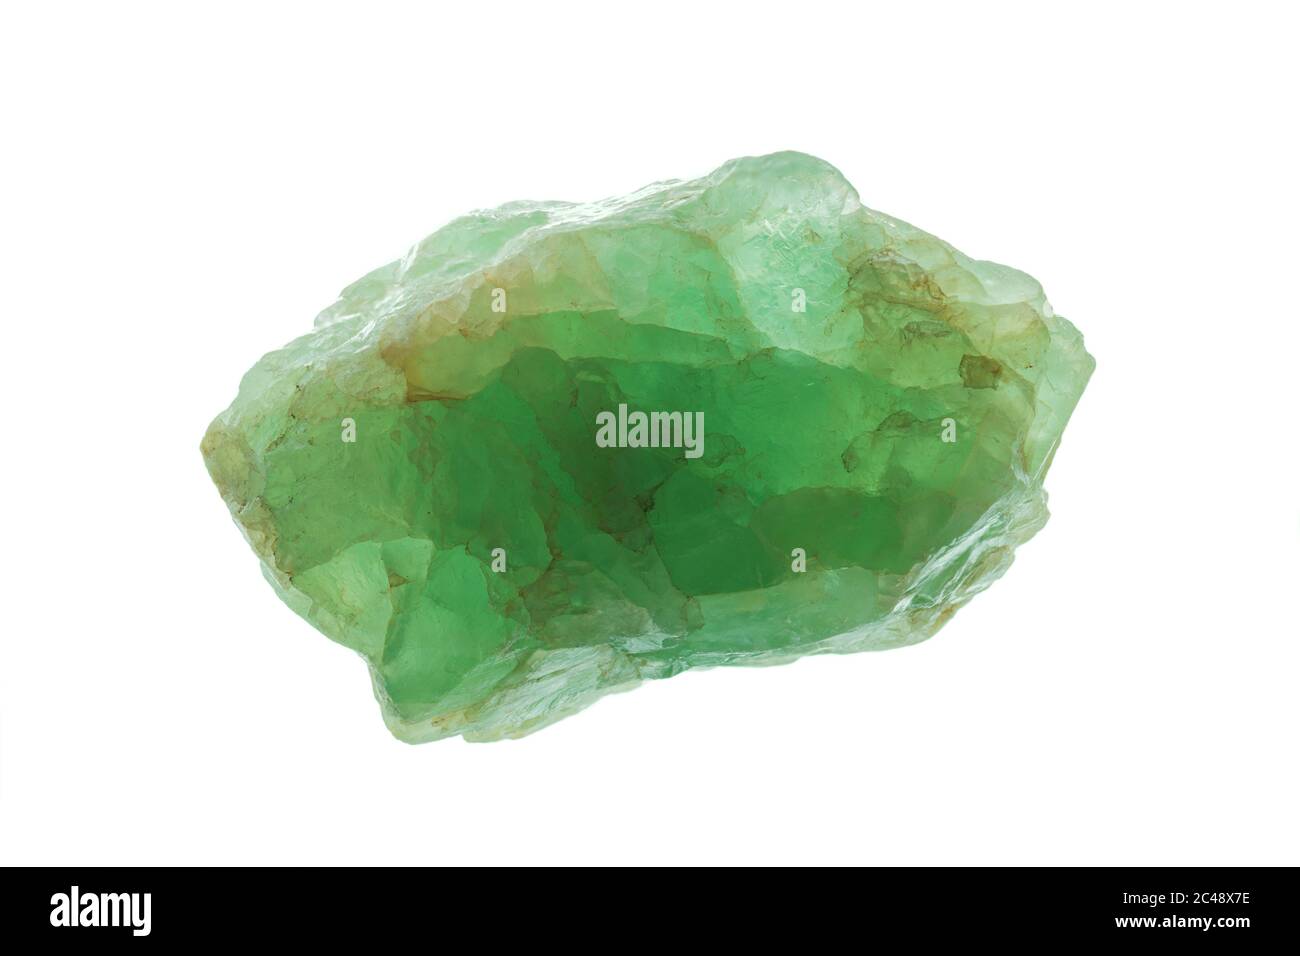 Roher Prasiolit (auch als grüner Quarz, grüner Amethyst oder Vermarine bekannt) ist eine grüne Quarzsorte, ein silikathaltiges Mineral chemisch Siliziumdioxid. Stockfoto